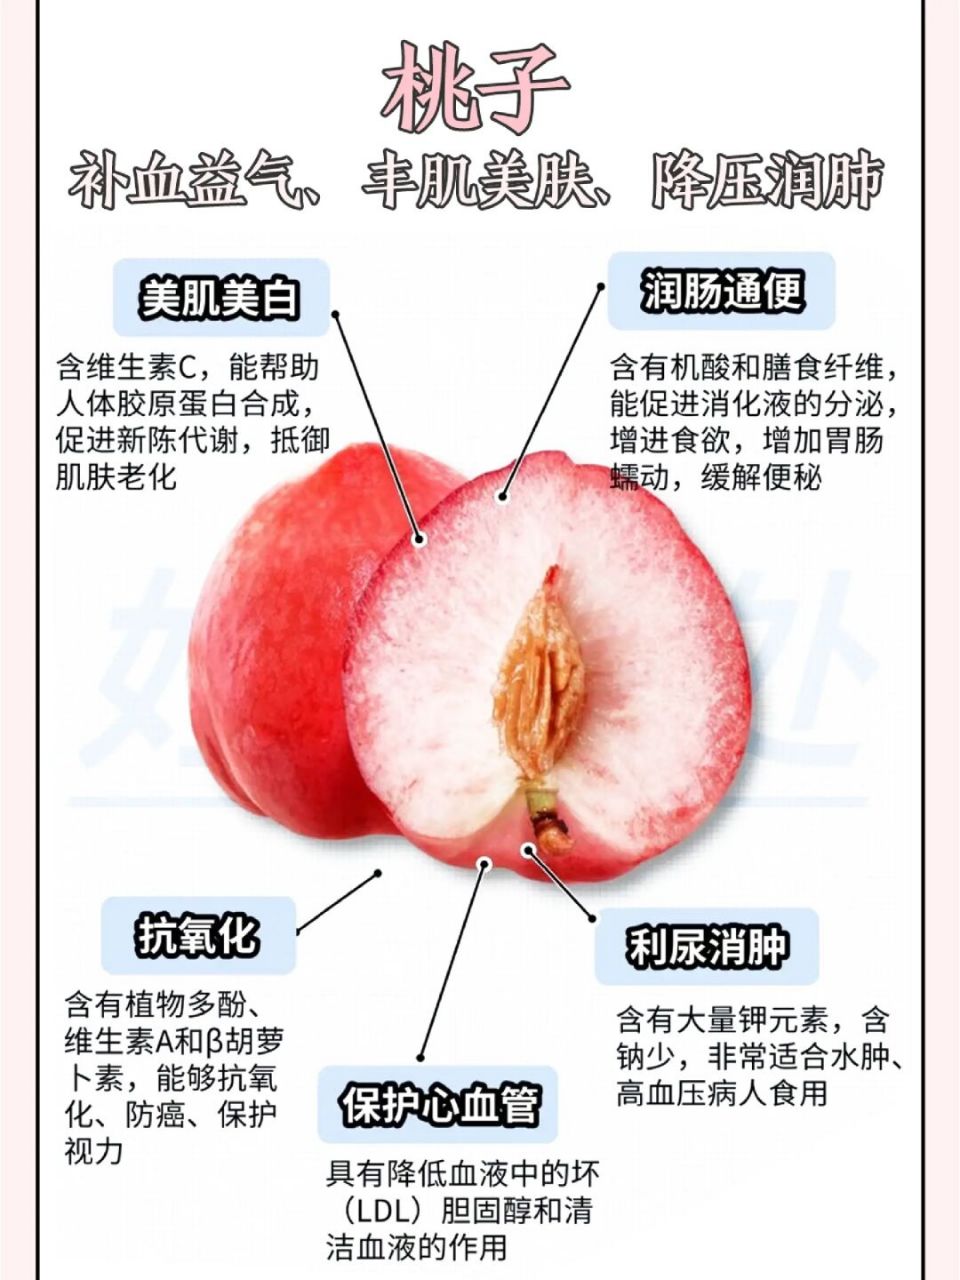 常见桃子的名称和特点(一)